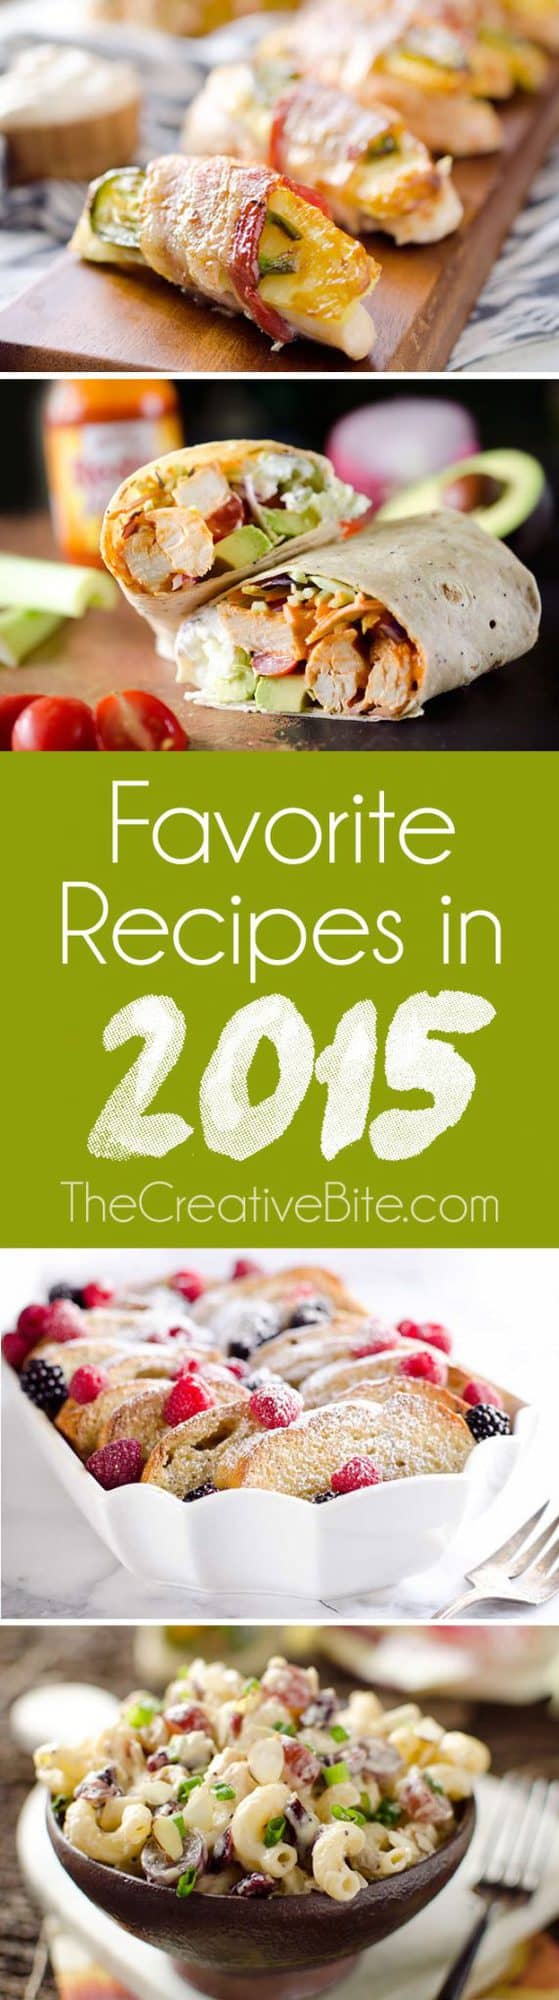 Favorite Recipes in 2015 - The Creative Bite